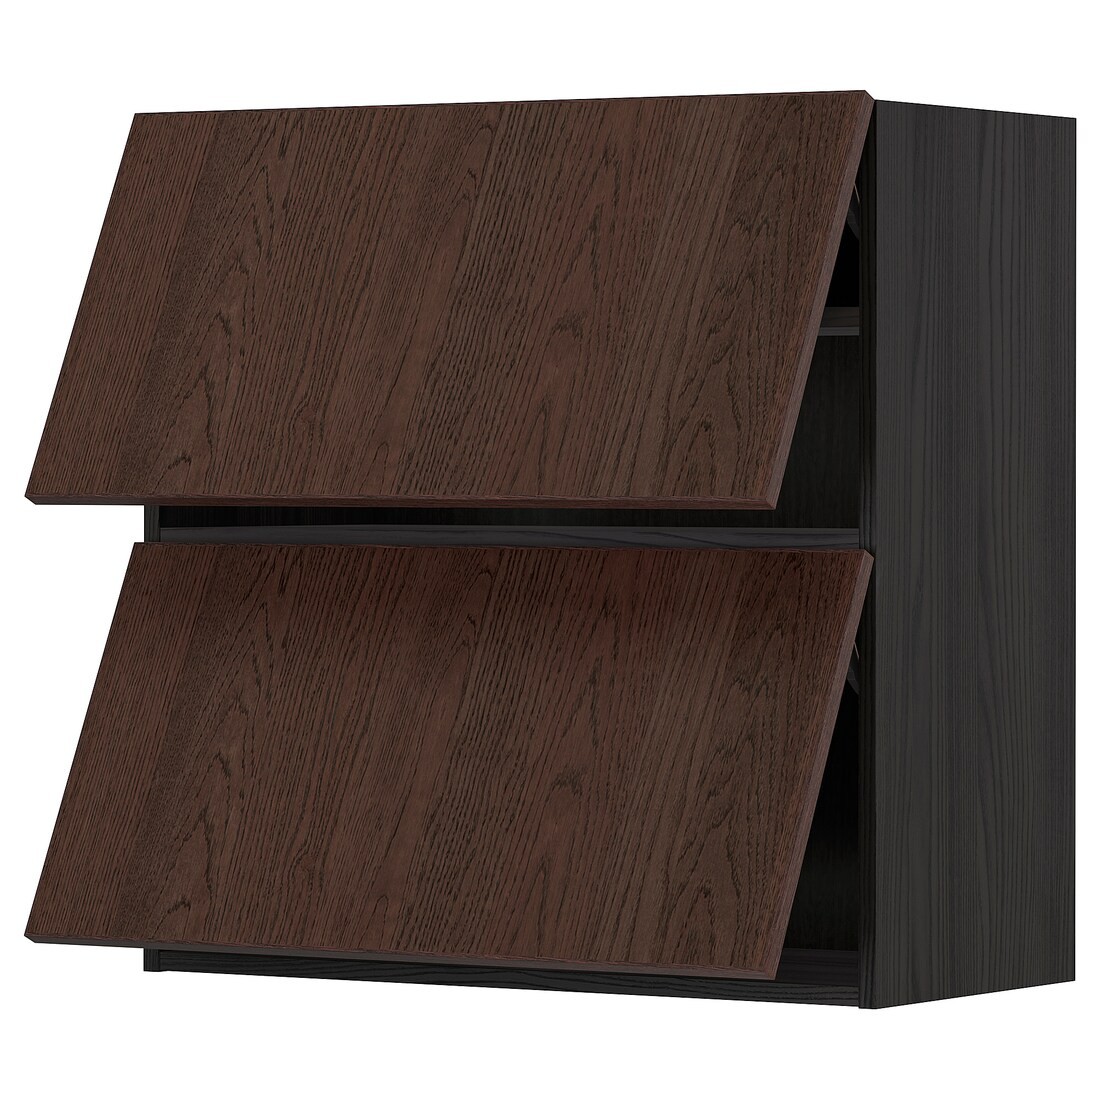 METOD МЕТОД Навесной горизонтальный шкаф / 2 двери, черный / Sinarp коричневый, 80x80 см